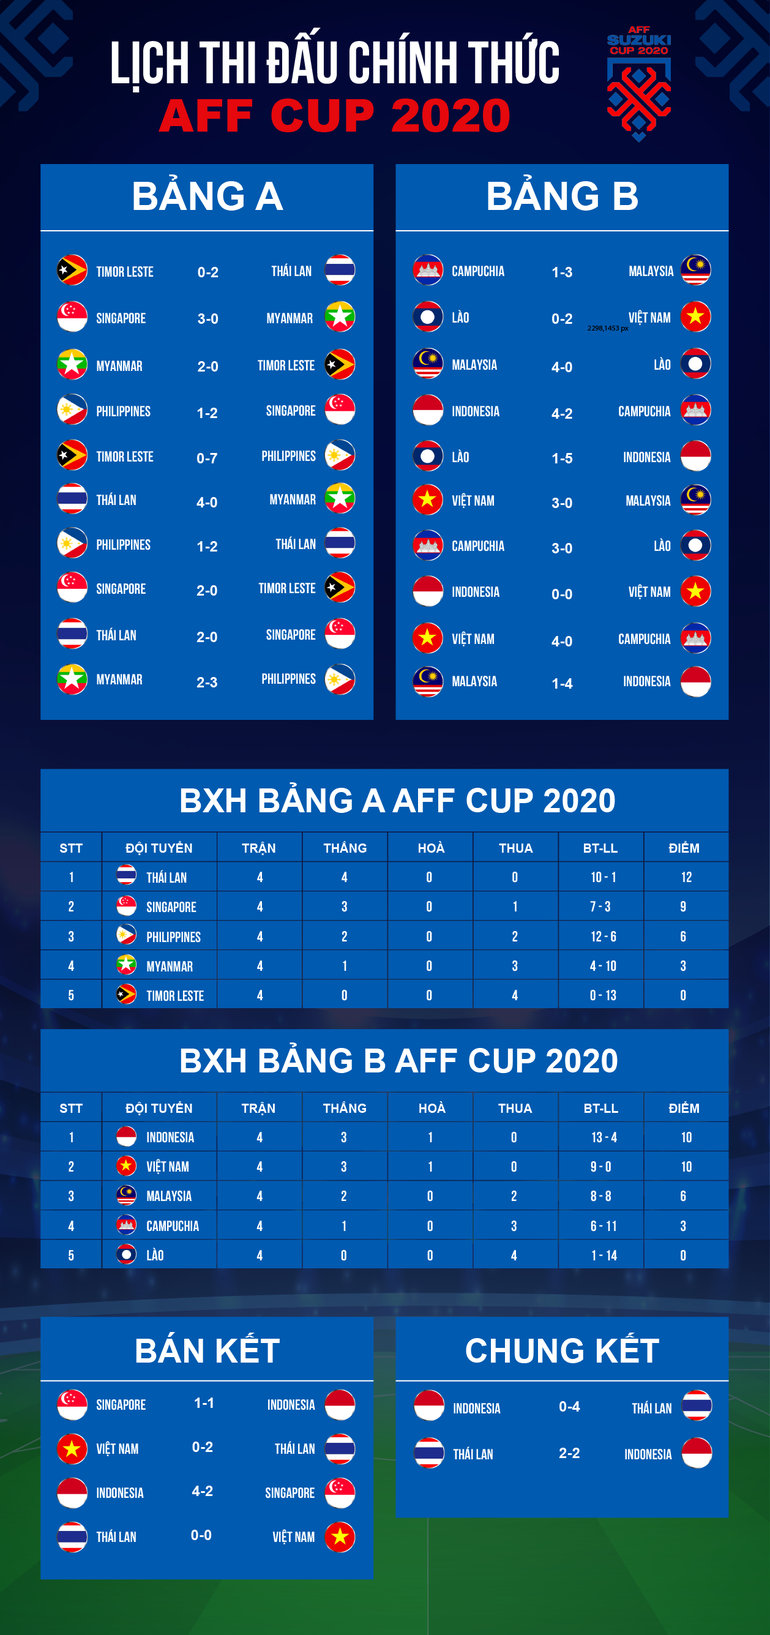 Báo Thái Lan nói gì sau khi đội nhà vô địch AFF Cup 2020? - 3